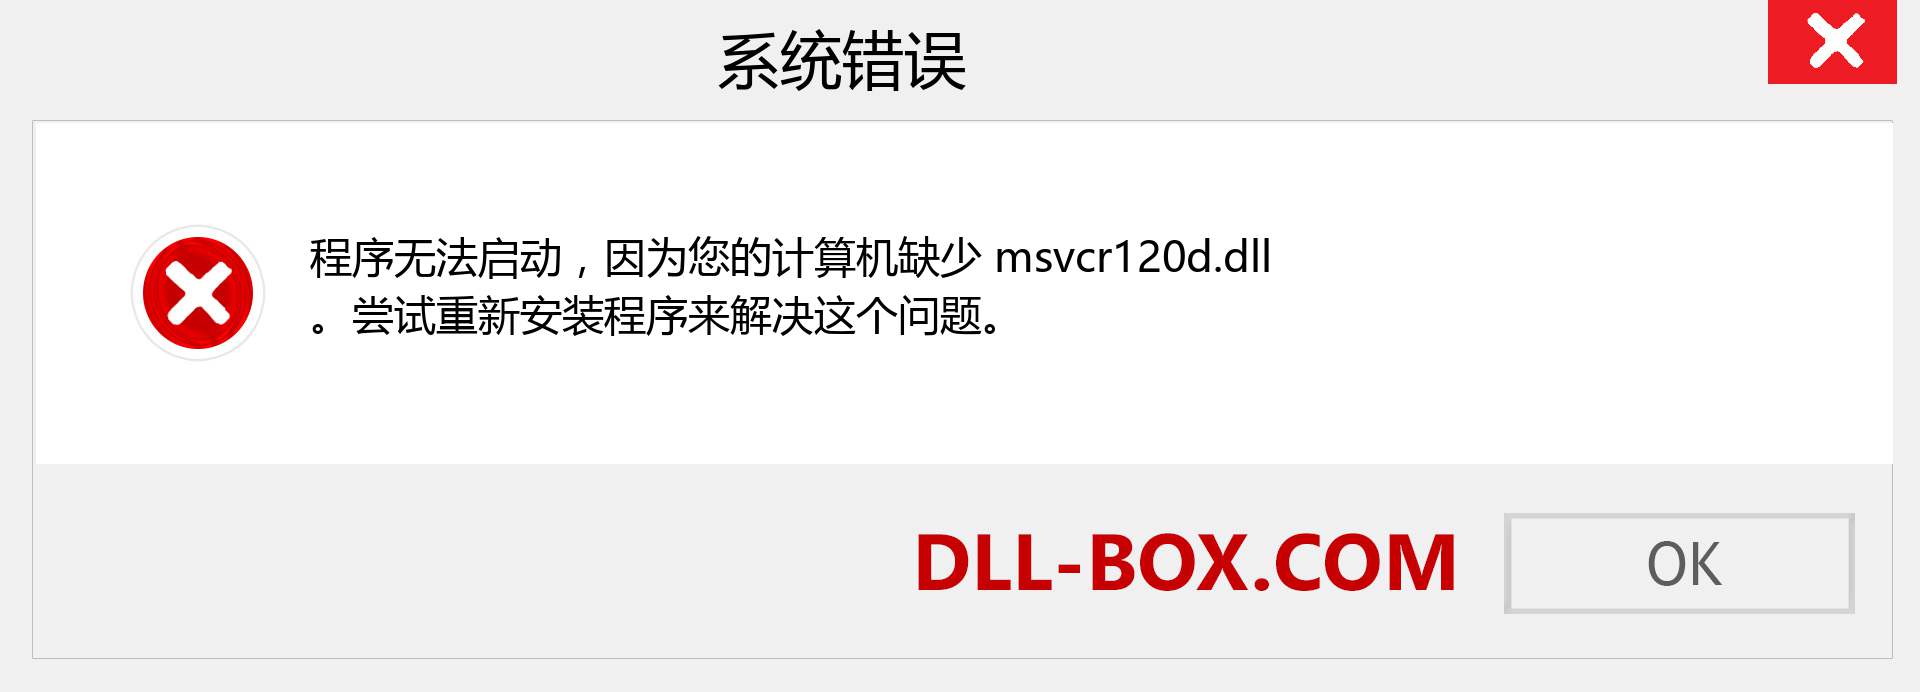 msvcr120d.dll 文件丢失？。 适用于 Windows 7、8、10 的下载 - 修复 Windows、照片、图像上的 msvcr120d dll 丢失错误